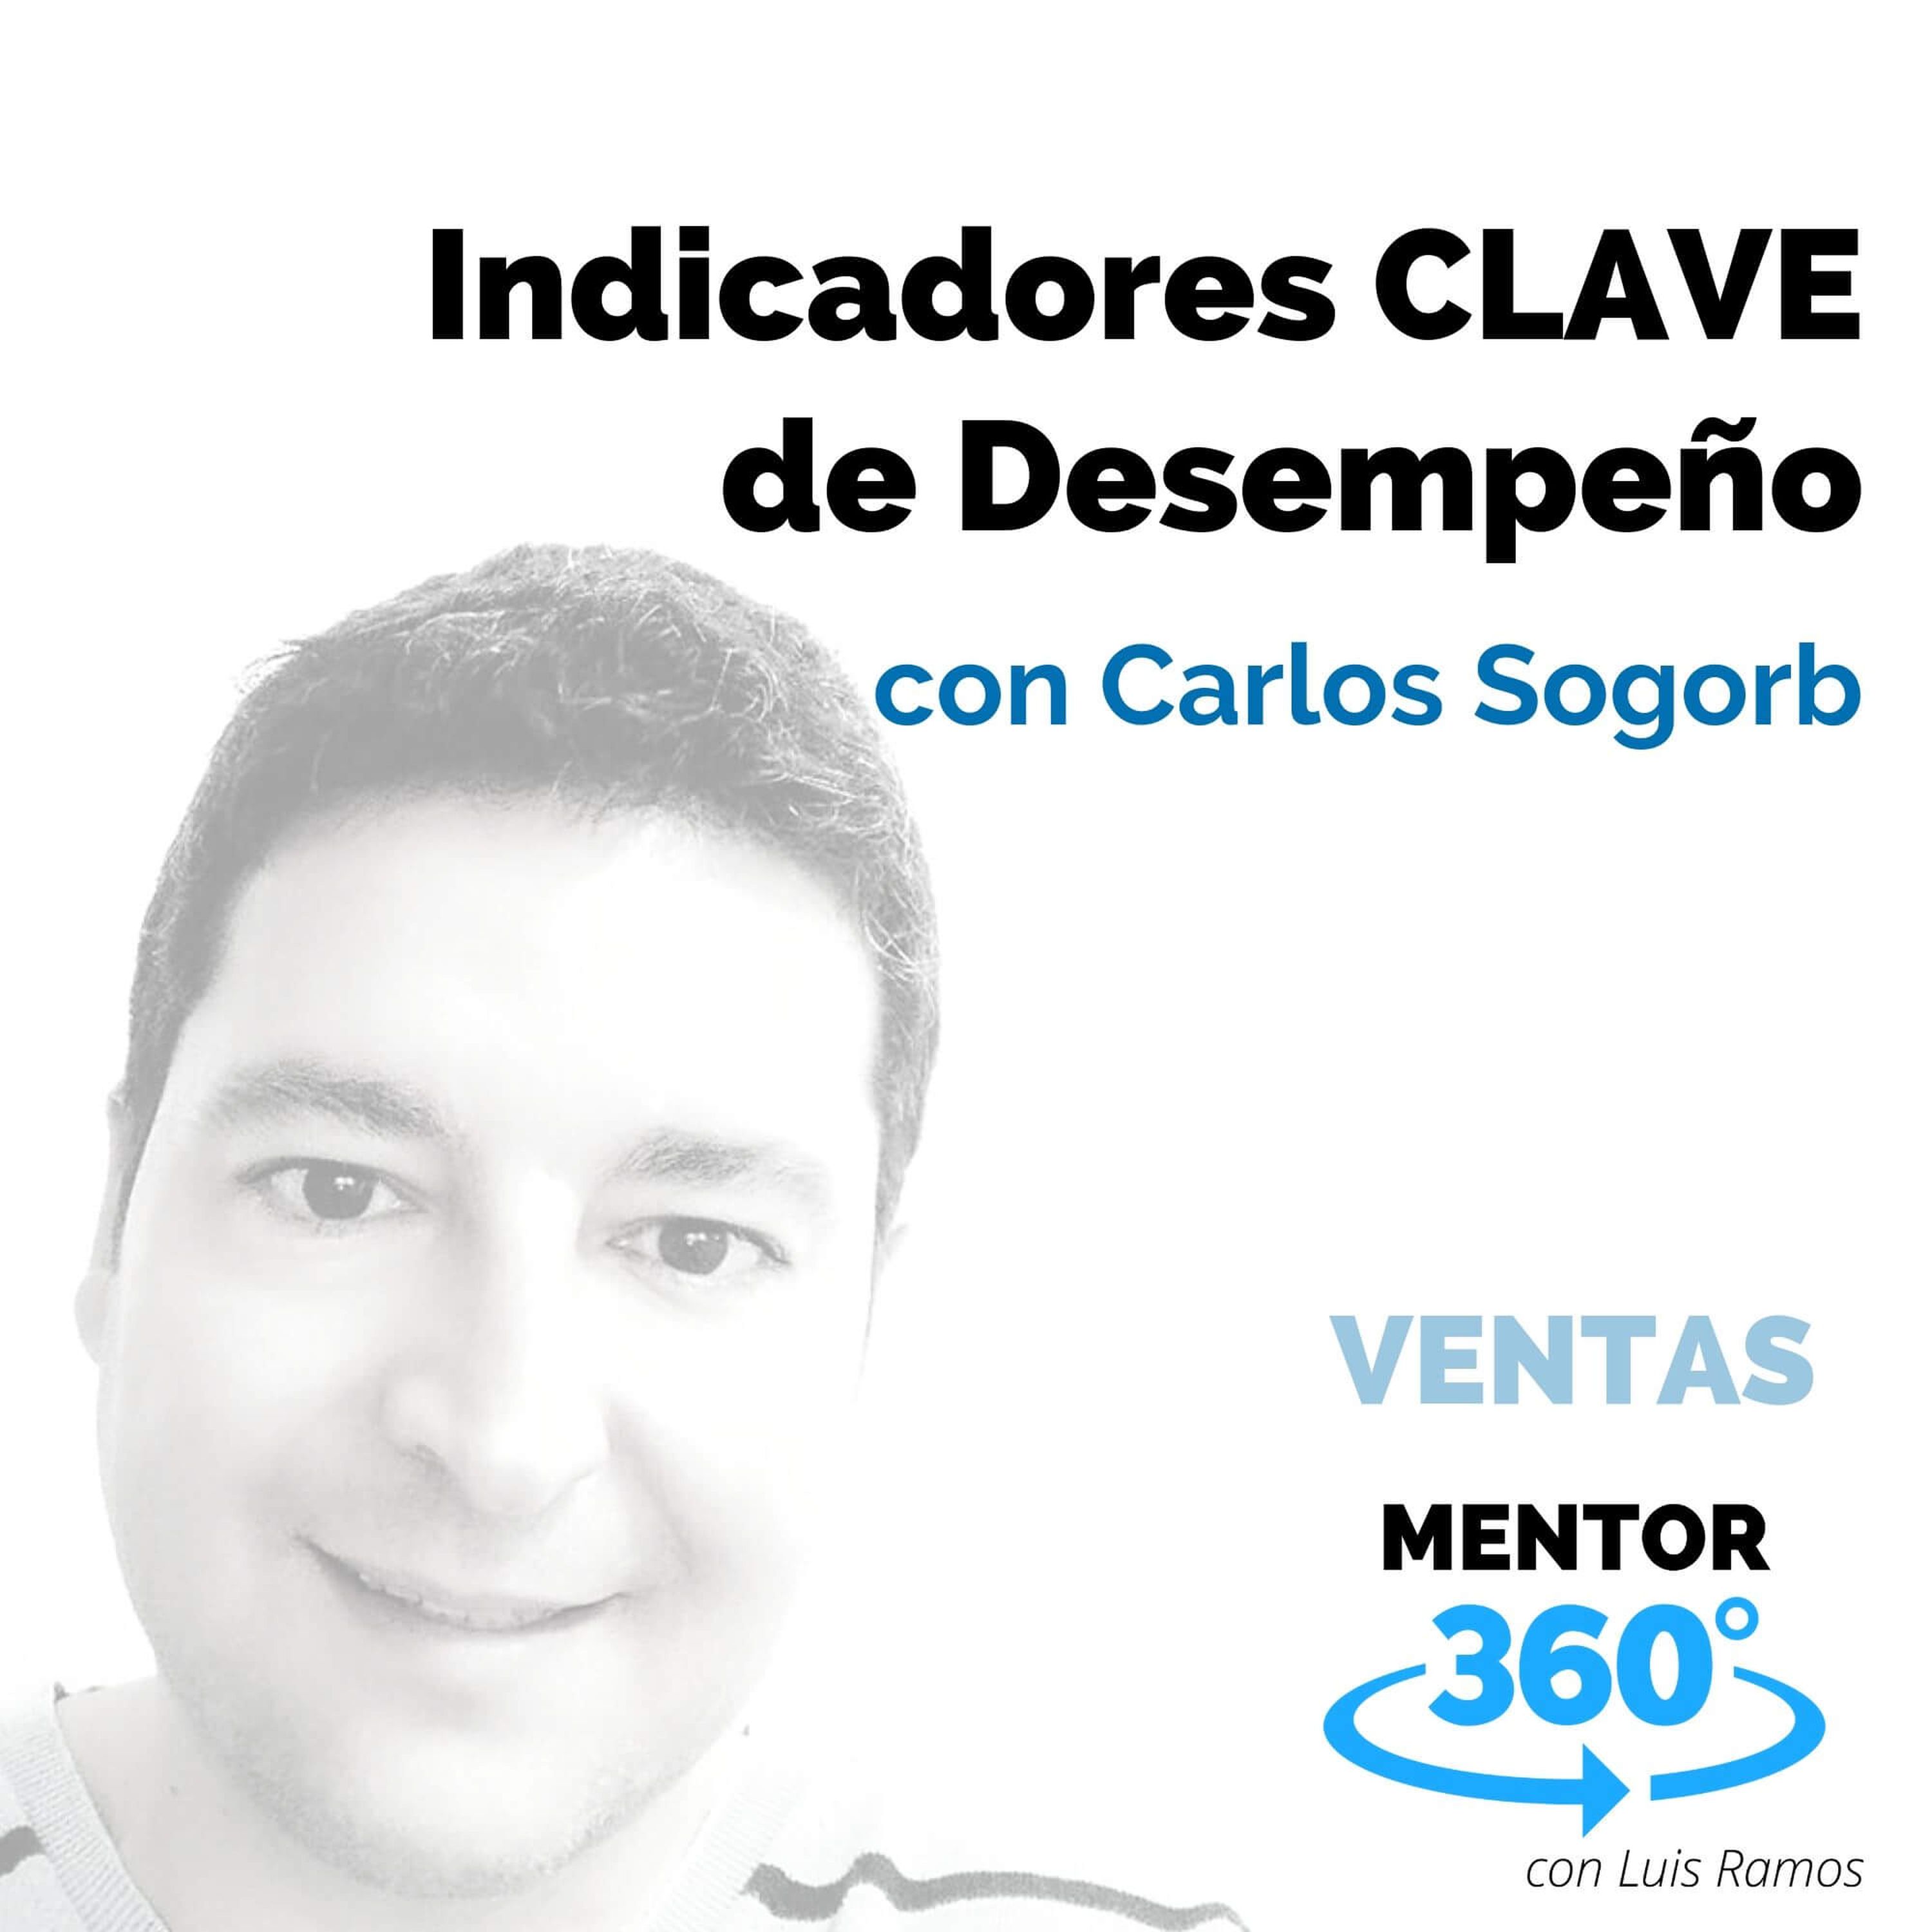 Indicadores Clave de Desempeño, con Carlos Sogorb - VENTAS - MENTOR360